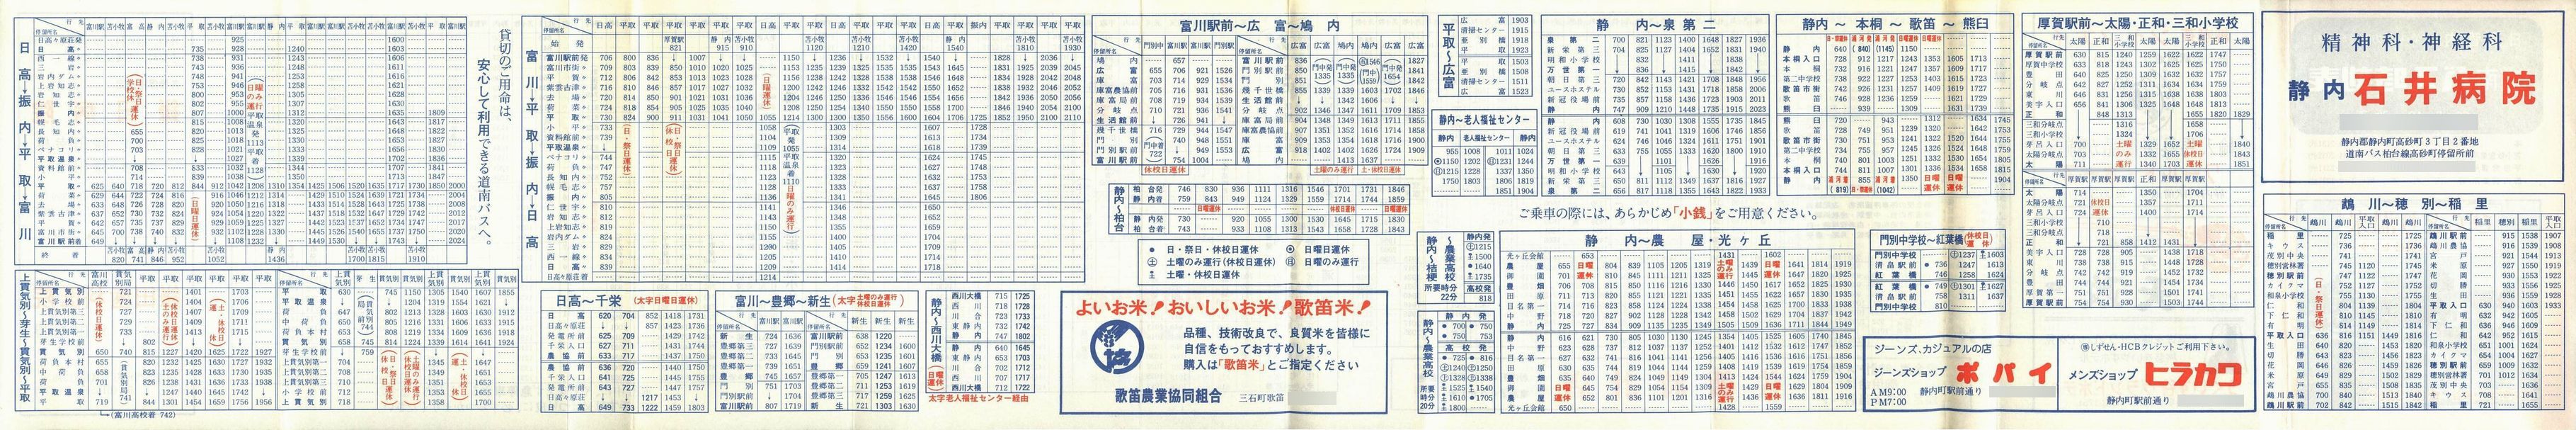 1981-05-10改正_道南バス_日高管内時刻表裏面